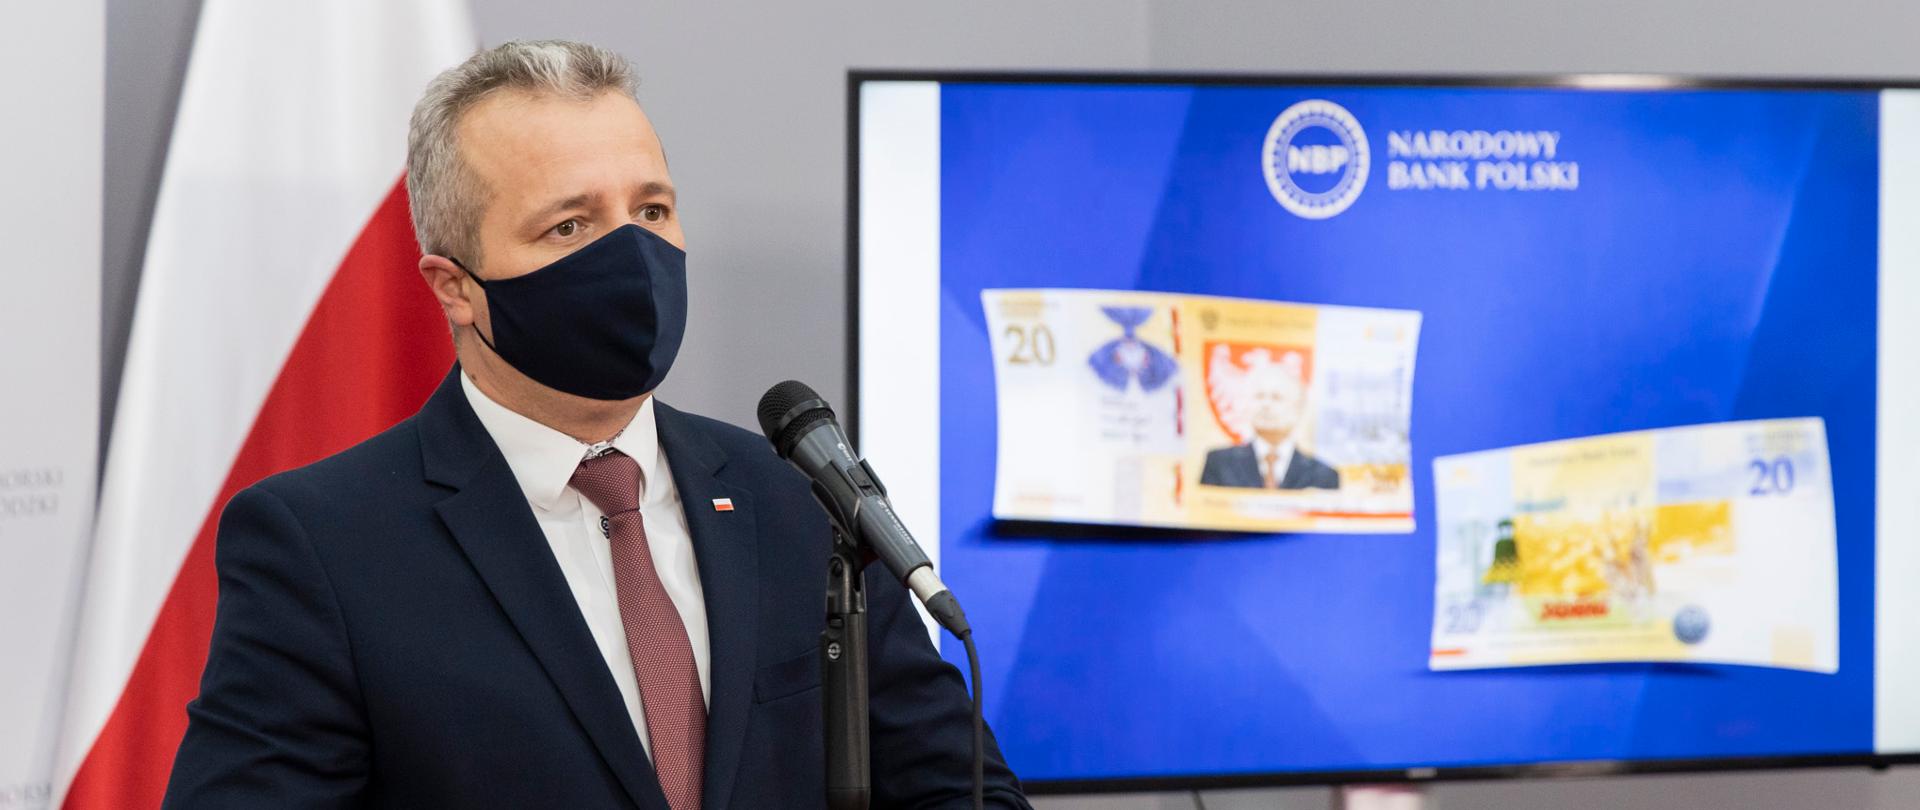 Wojewoda podczas briefingu prasowego poświęconego prezentacji banknotu kolekcjonerskiego NBP, upamiętniającego Prezydenta RP Lecha Kaczyńskiego.